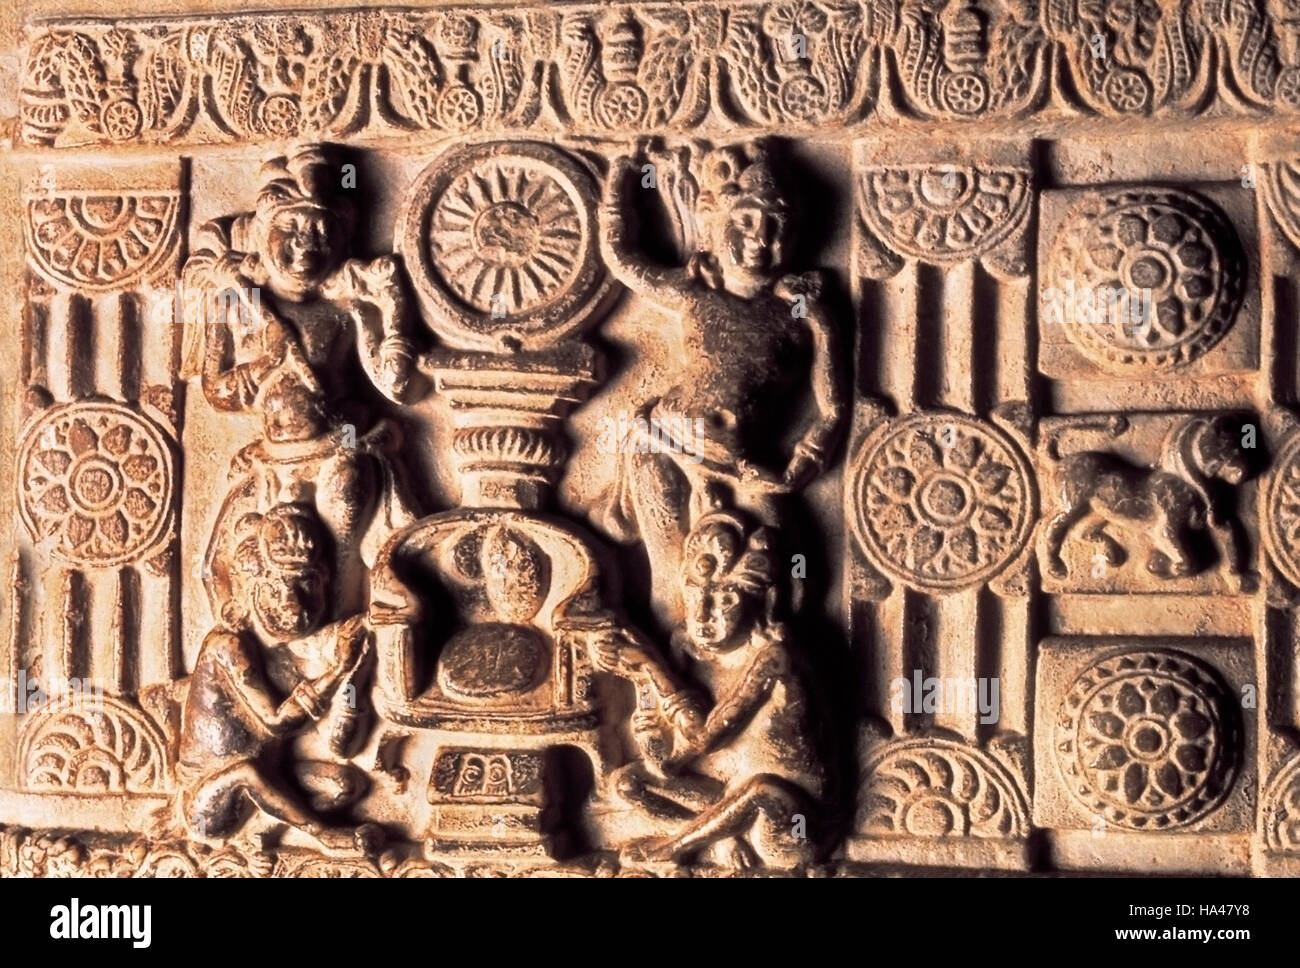 Amaravati Stupa, Verehrung der Thron mit Rad. Indien, 1. Jahrhundert v. Chr. Stockfoto